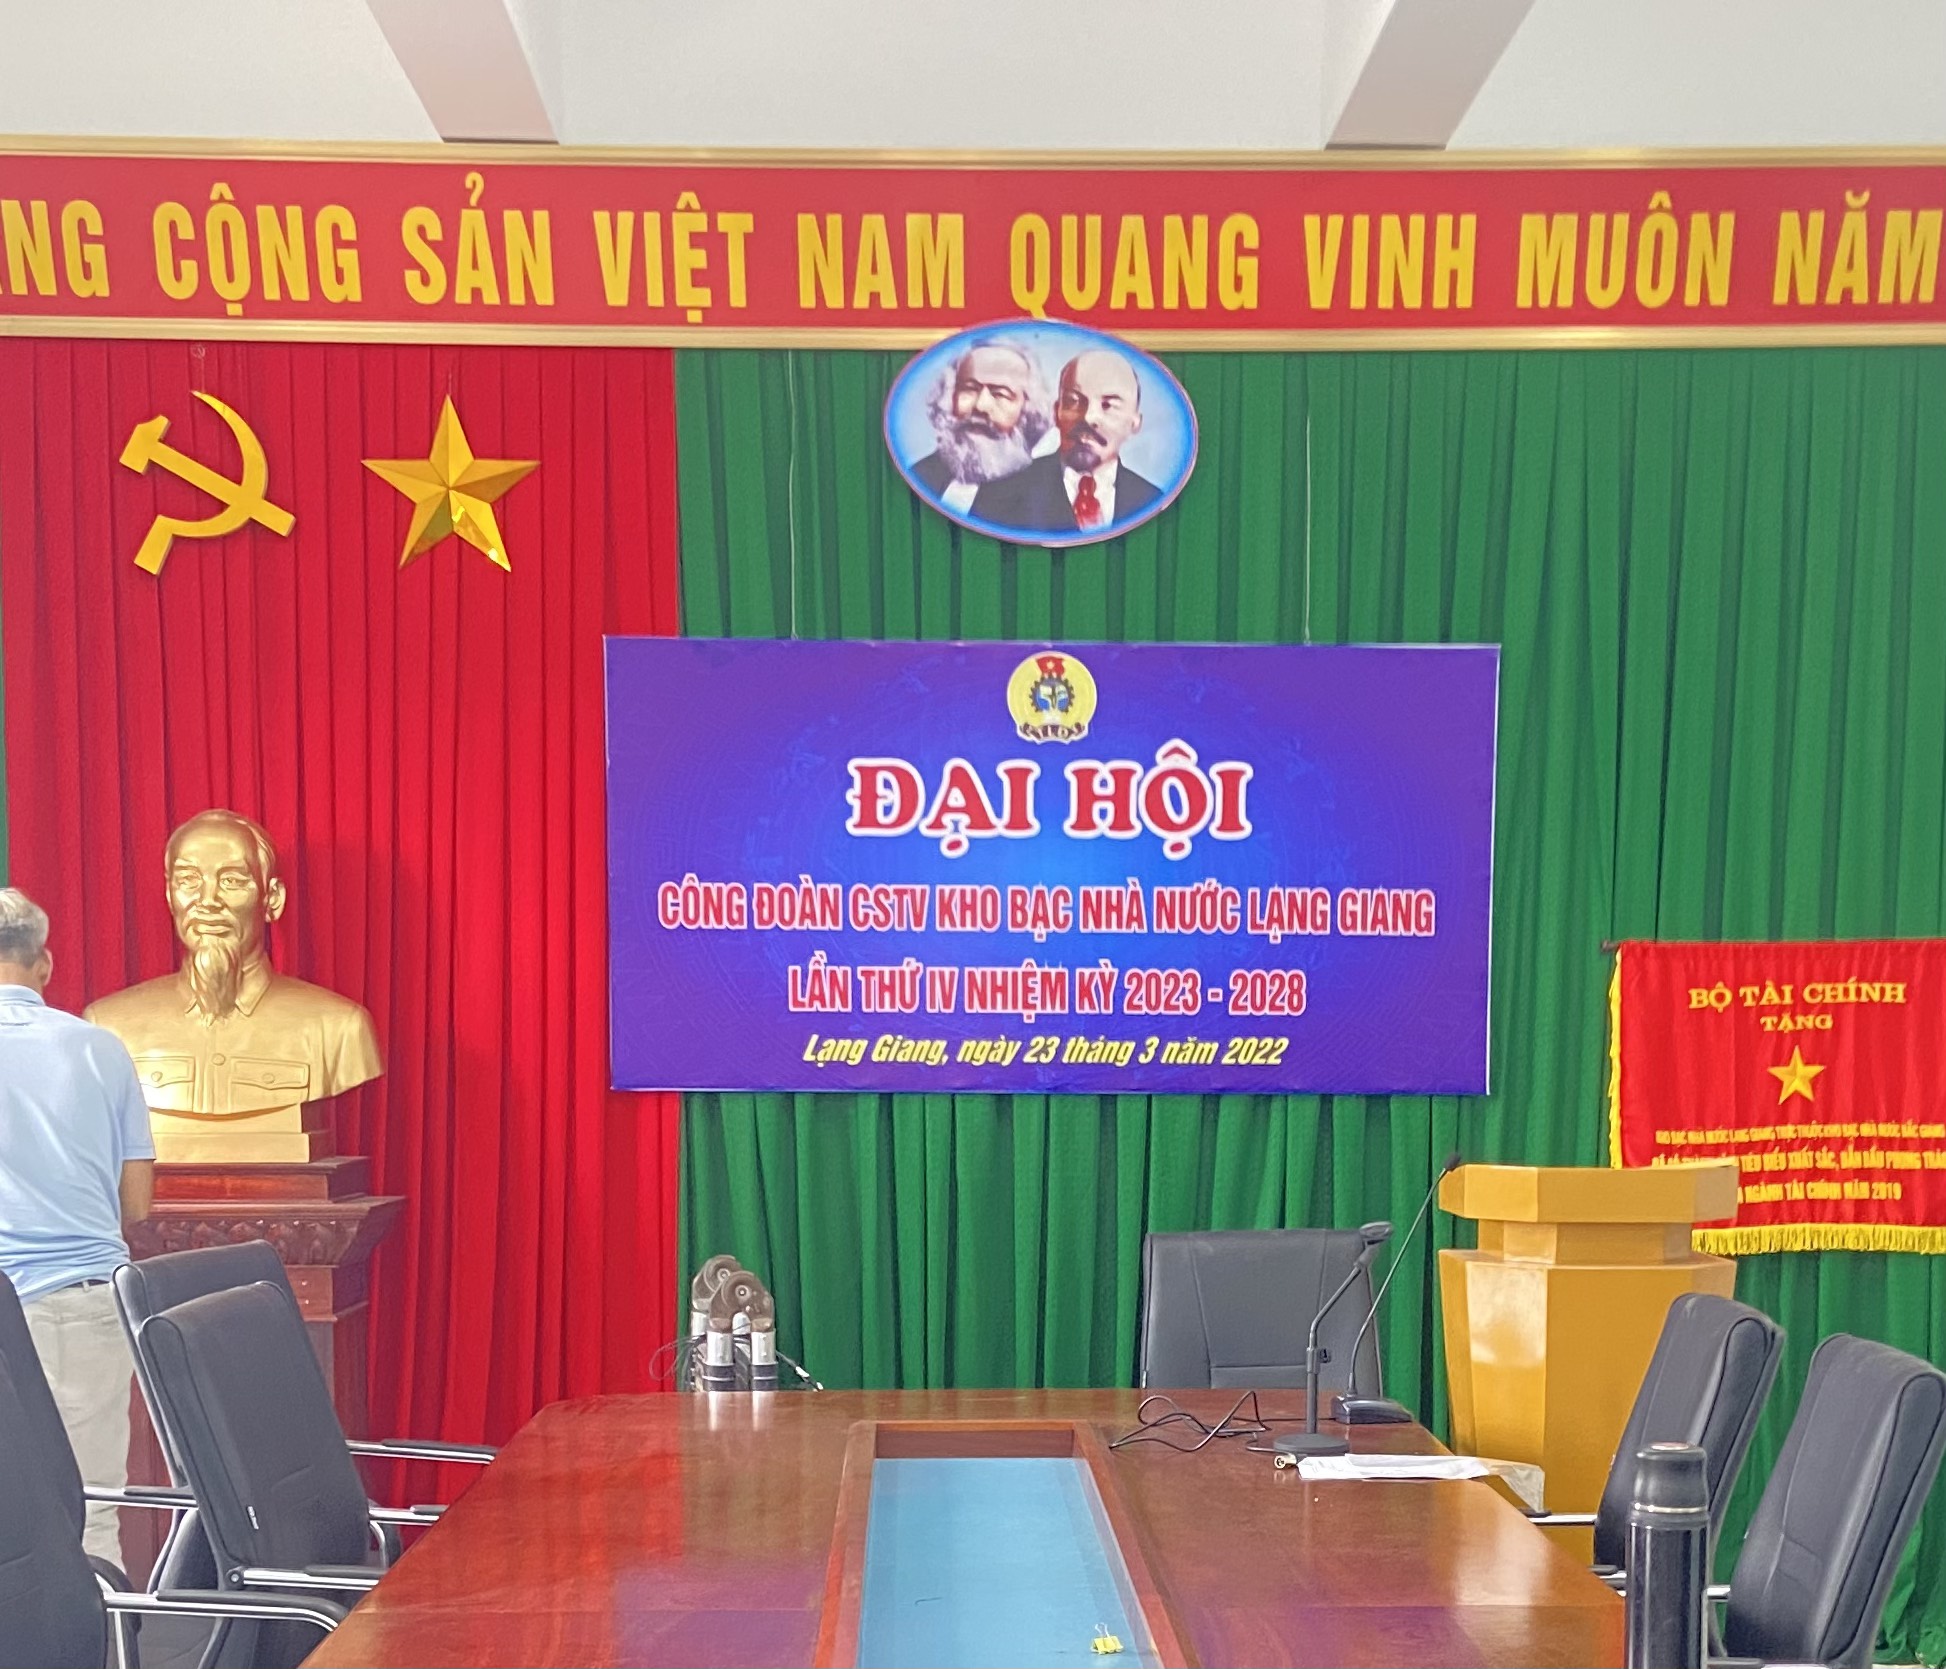 Trường Giang Audio Cung Cấp Và Lắp Đặt Âm Thanh Cho Kho Bạc Nhà Nước Huyện Lạng Giang